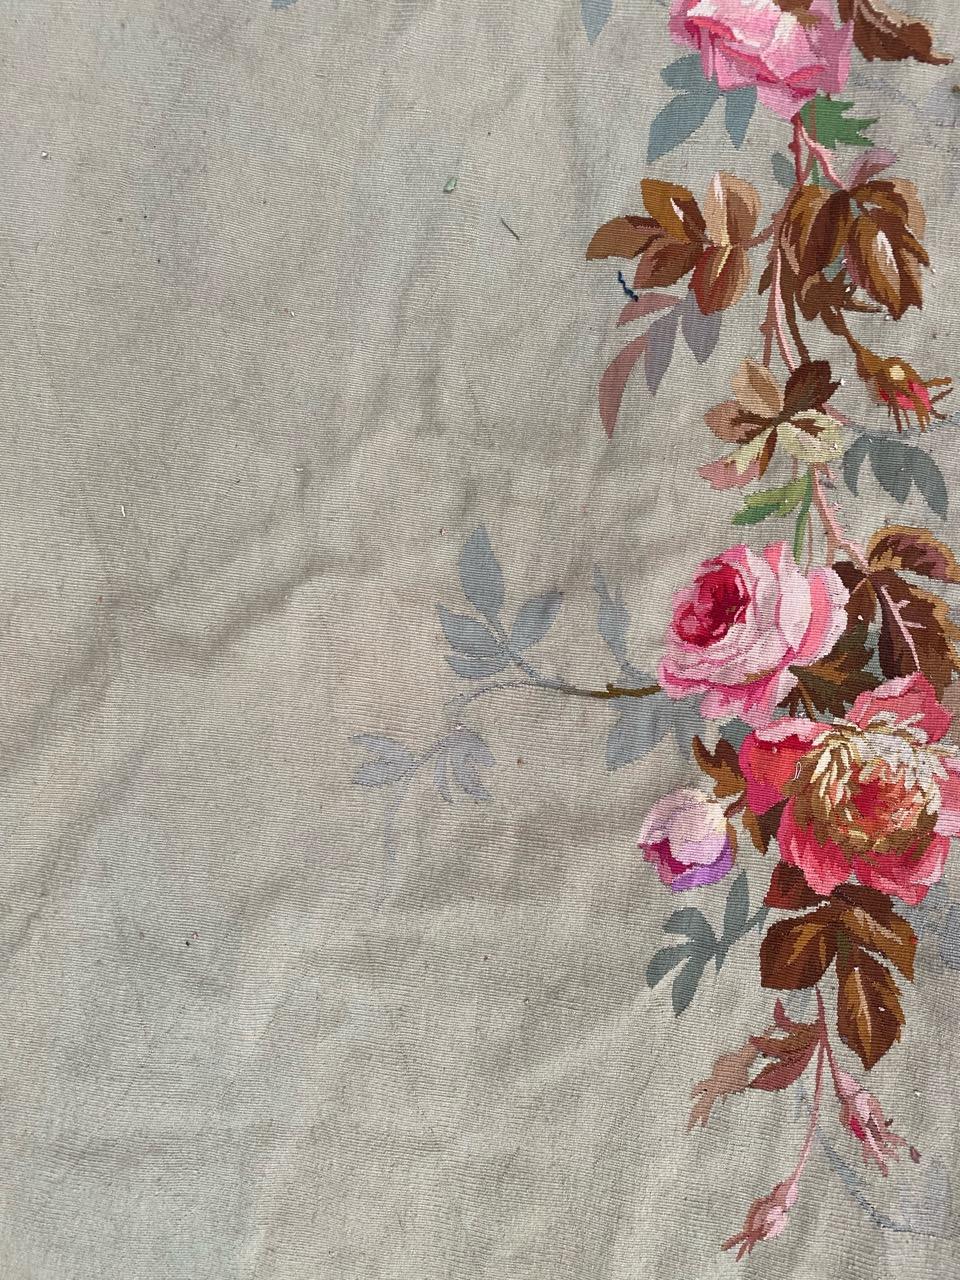 Très belle tapisserie de Valence d'Aubusson de la fin du 19e siècle, d'époque Napoléon III, avec de jolis motifs floraux et de belles couleurs, entièrement et finement tissée à la main avec de la laine et de la soie.

✨✨✨
